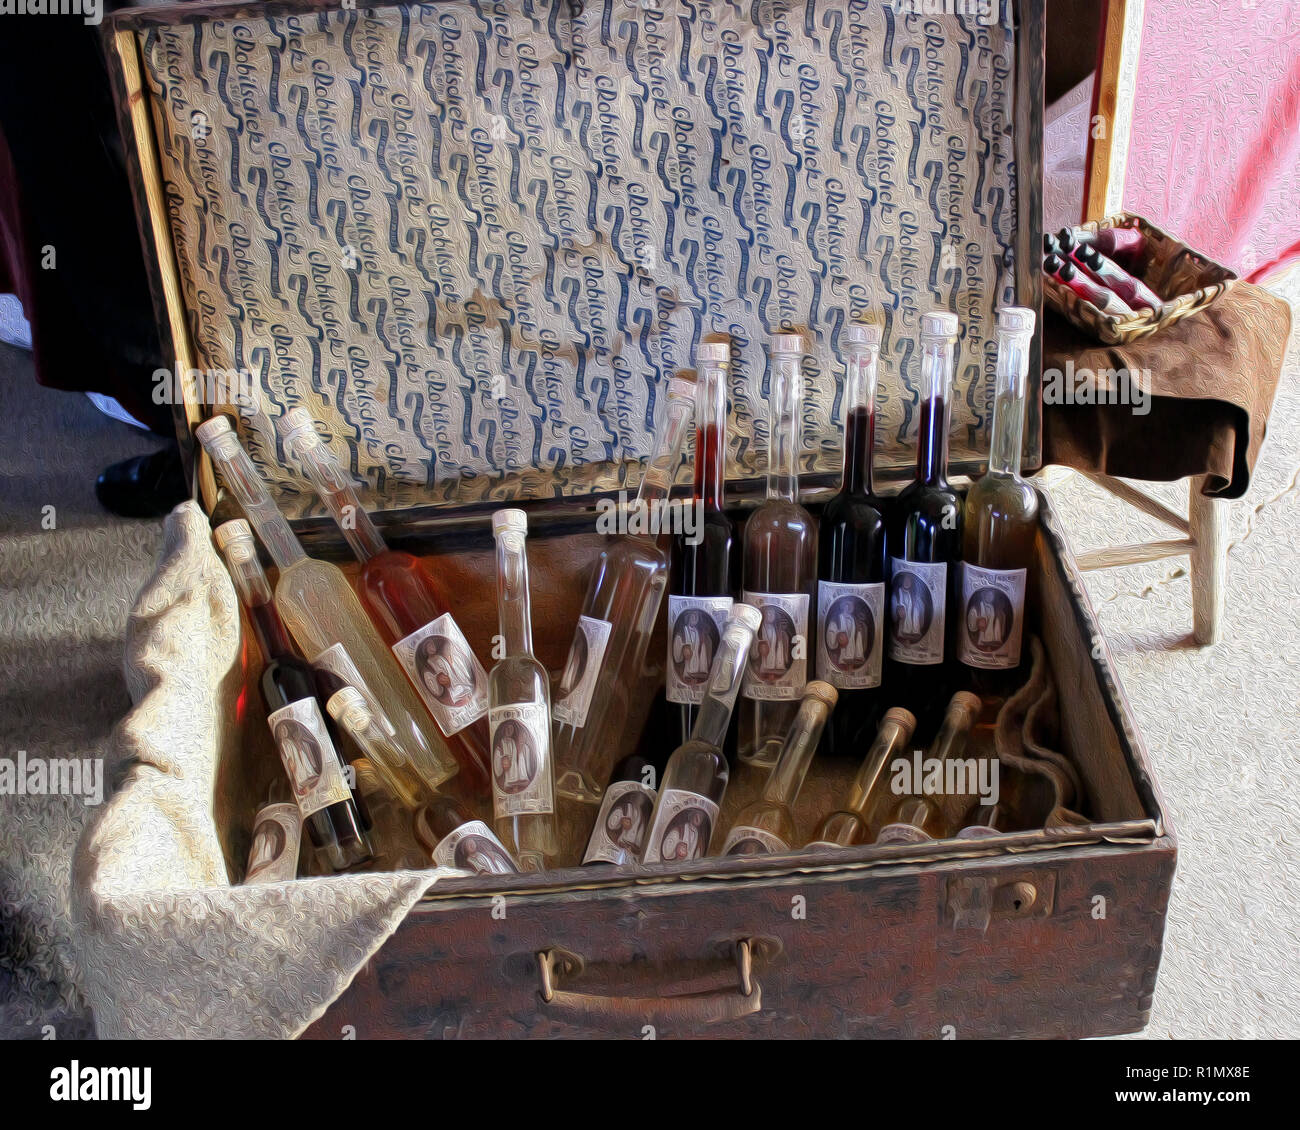 Koffer mit Wein Stockfotografie - Alamy